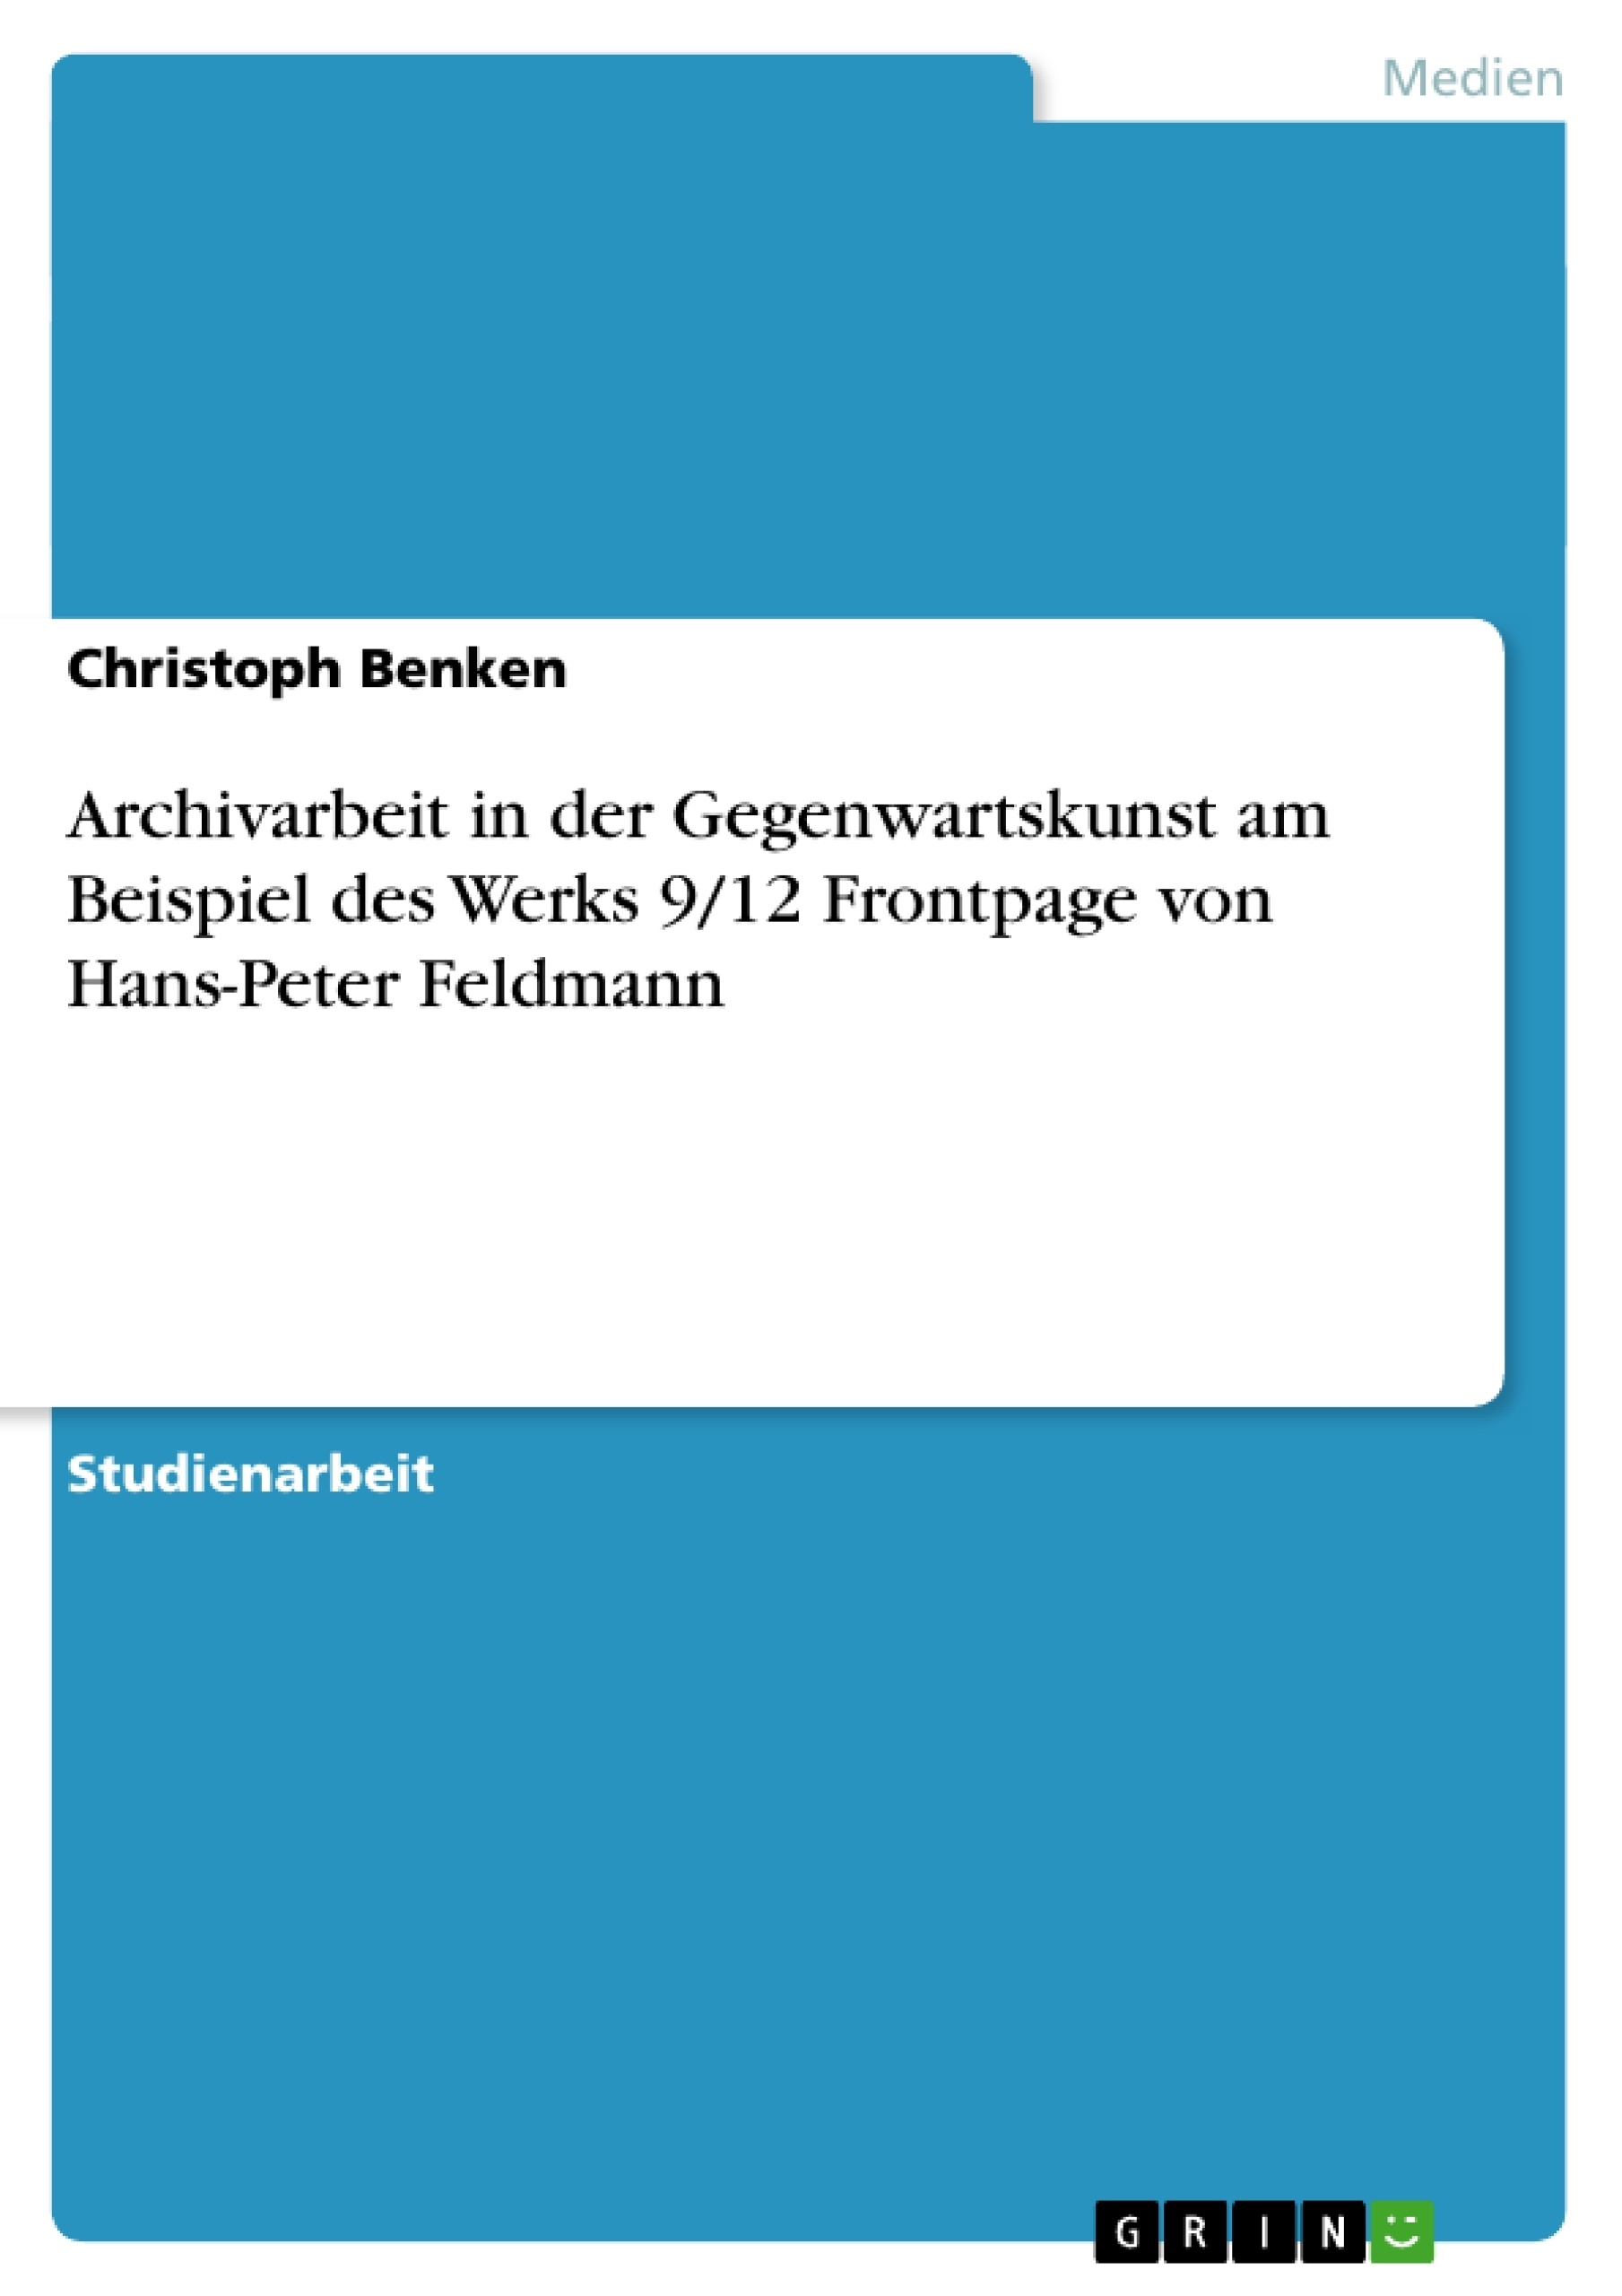 Título: Archivarbeit in der Gegenwartskunst am Beispiel des Werks 9/12 Frontpage von Hans-Peter Feldmann